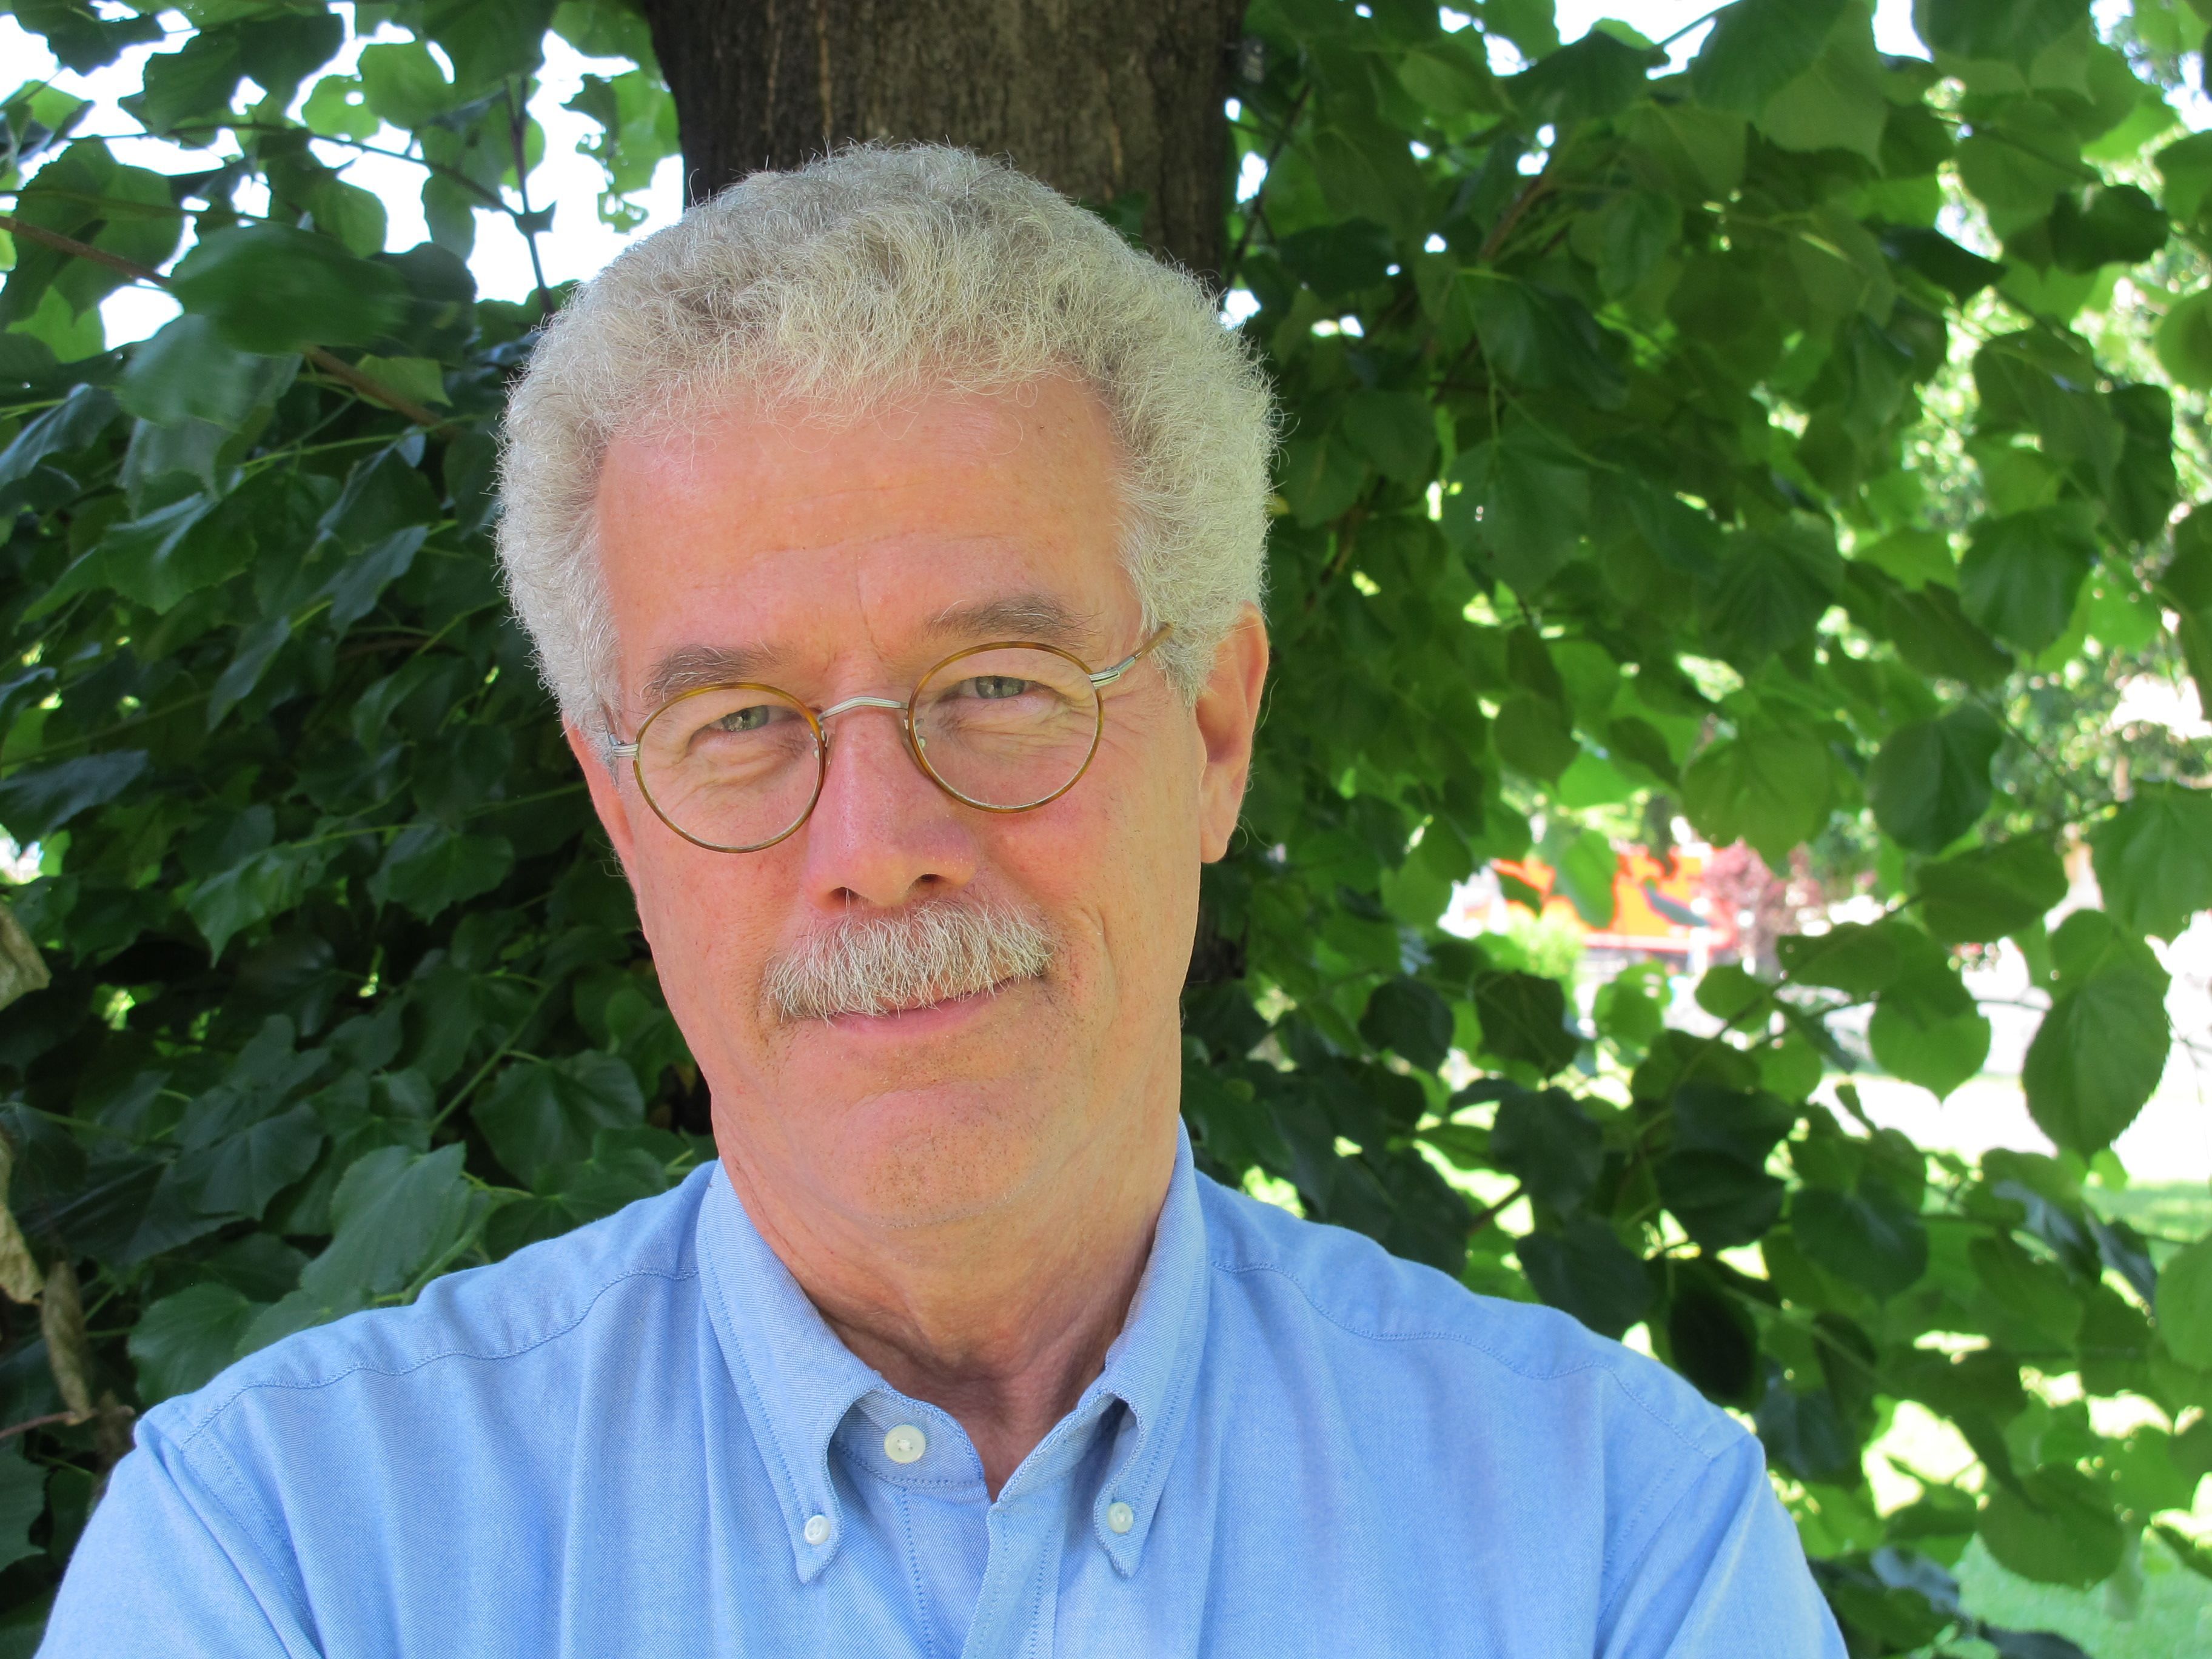 Dr. David Becker, Professor für Sozialpsychologie und interkulturelle Praxis an der Sigmund-Freud-Universität Berlin.